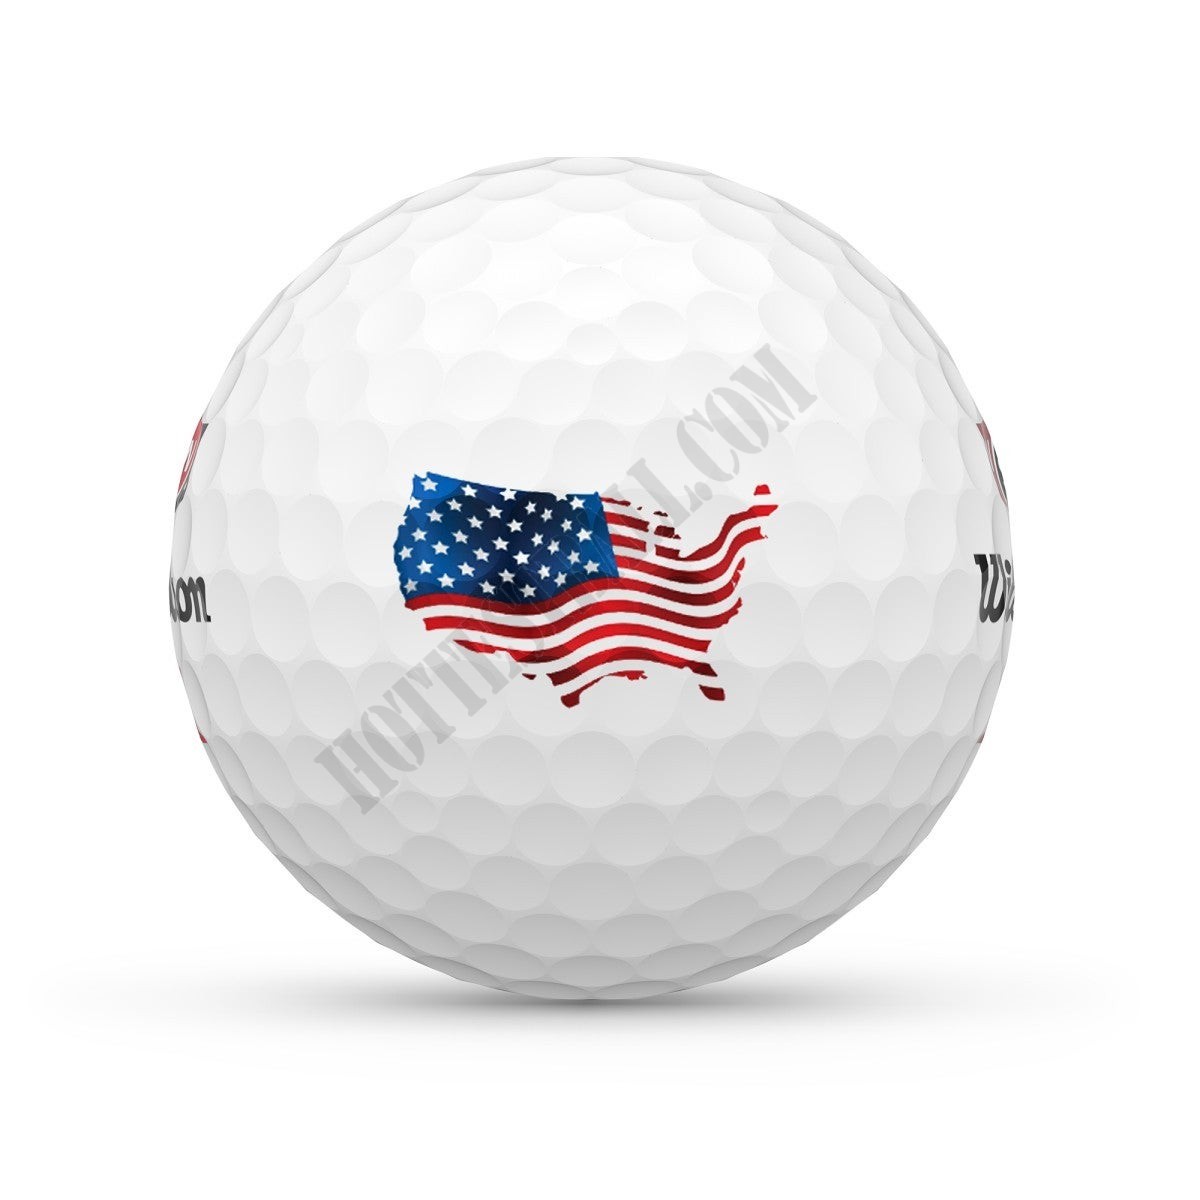 DUO Soft+ USA Golf Balls - Wilson Discount Store - -2